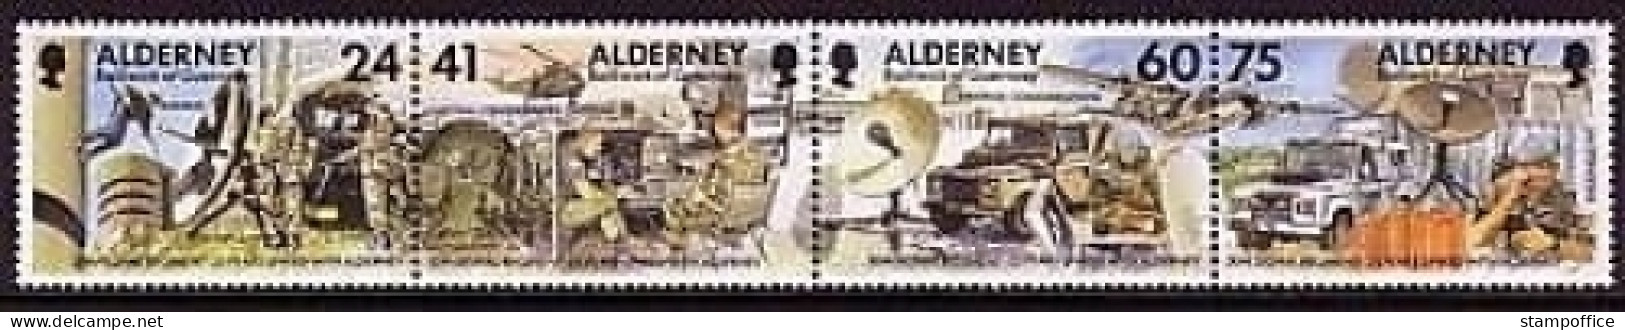 ALDERNEY MI-NR. 90-93 POSTFRISCH(MINT) ZD FERNMELDEREGIMENT 1996 AUTO HUBSCHRAUBER FLUGZEUG - Alderney